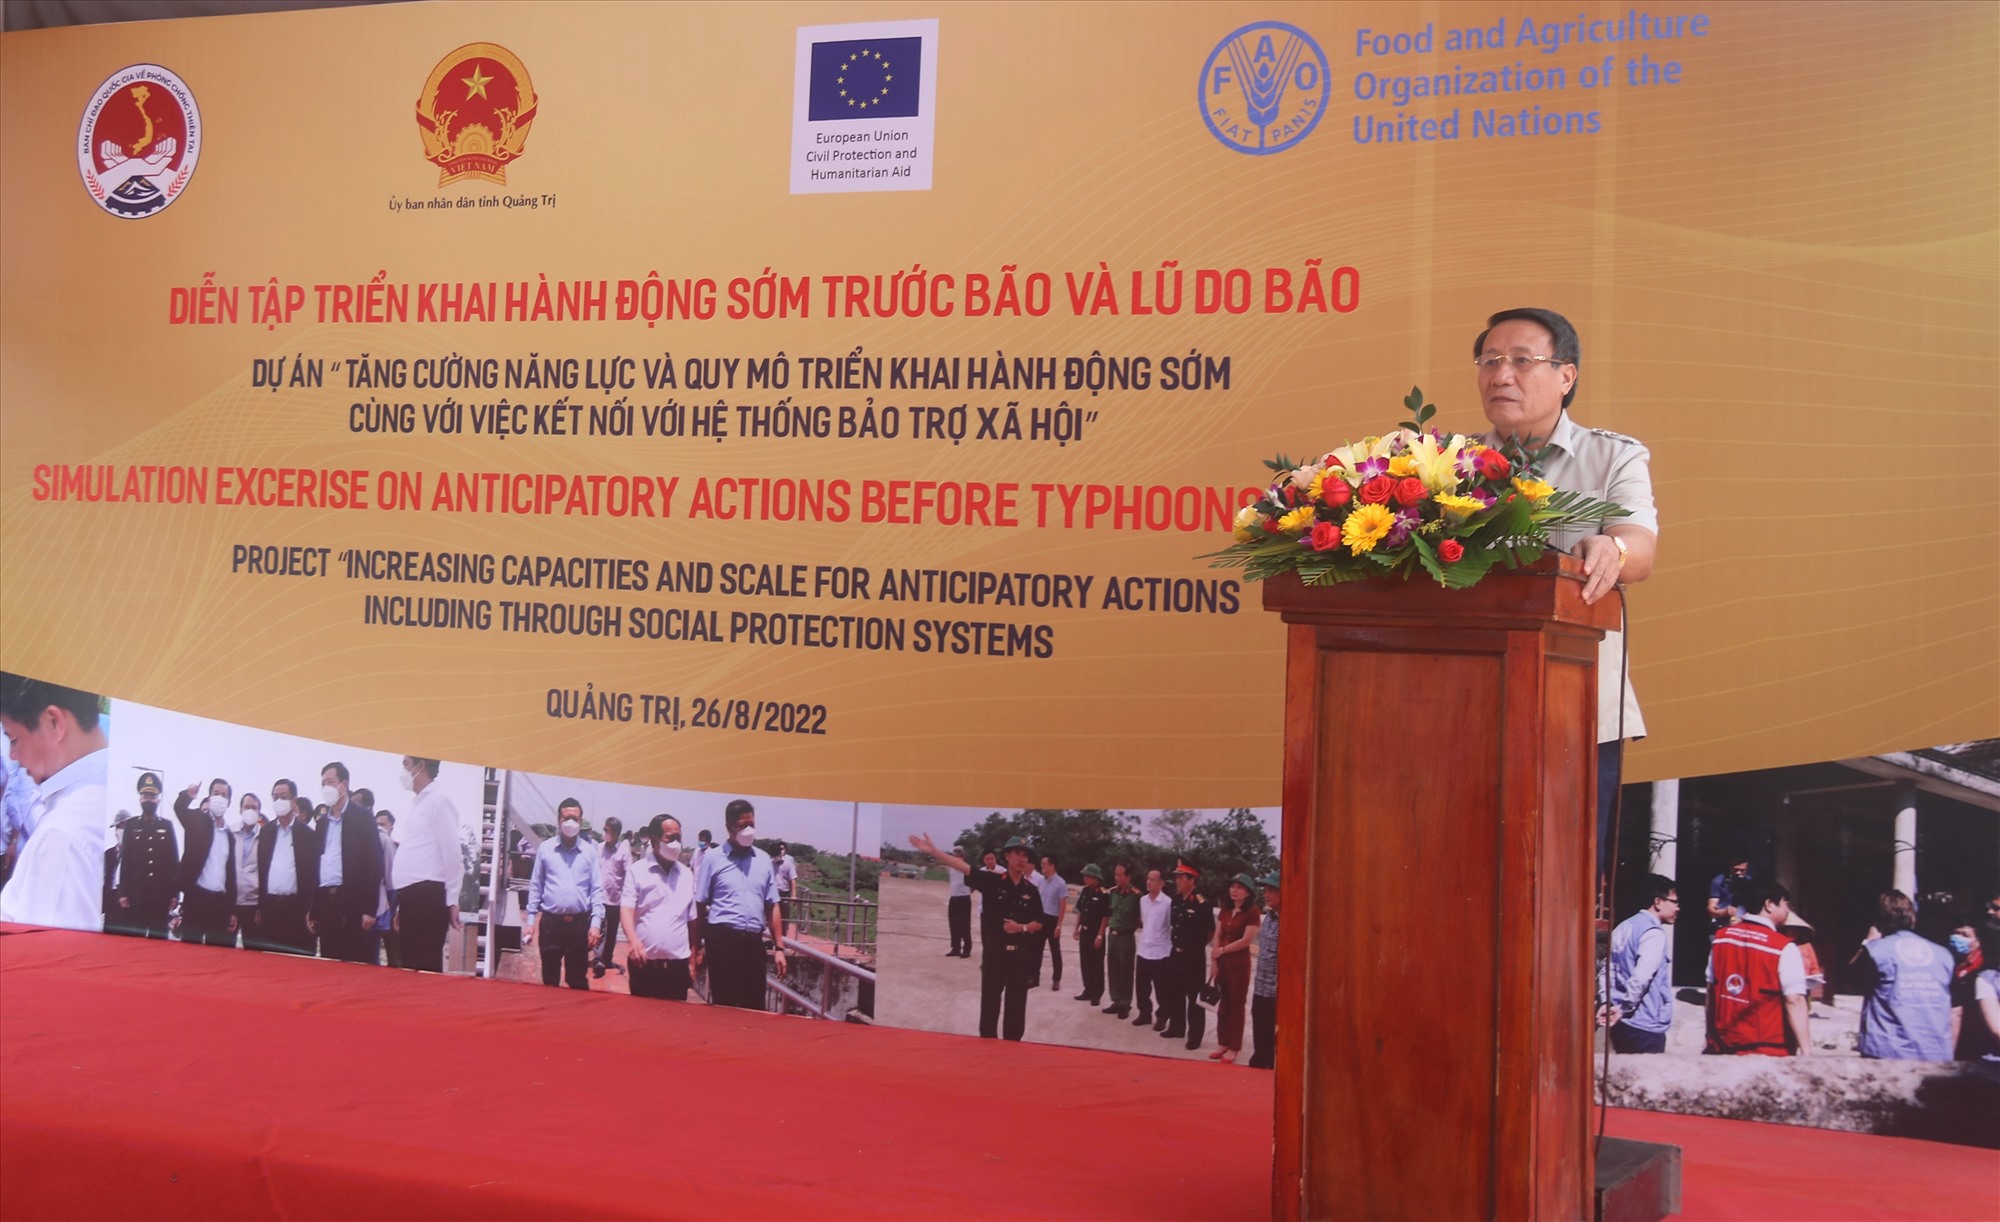 Phó Chủ tịch Thường trực UBND tỉnh Hà Sỹ Đồng phát biểu khai mạc buổi diễn tập - Ảnh: N.B